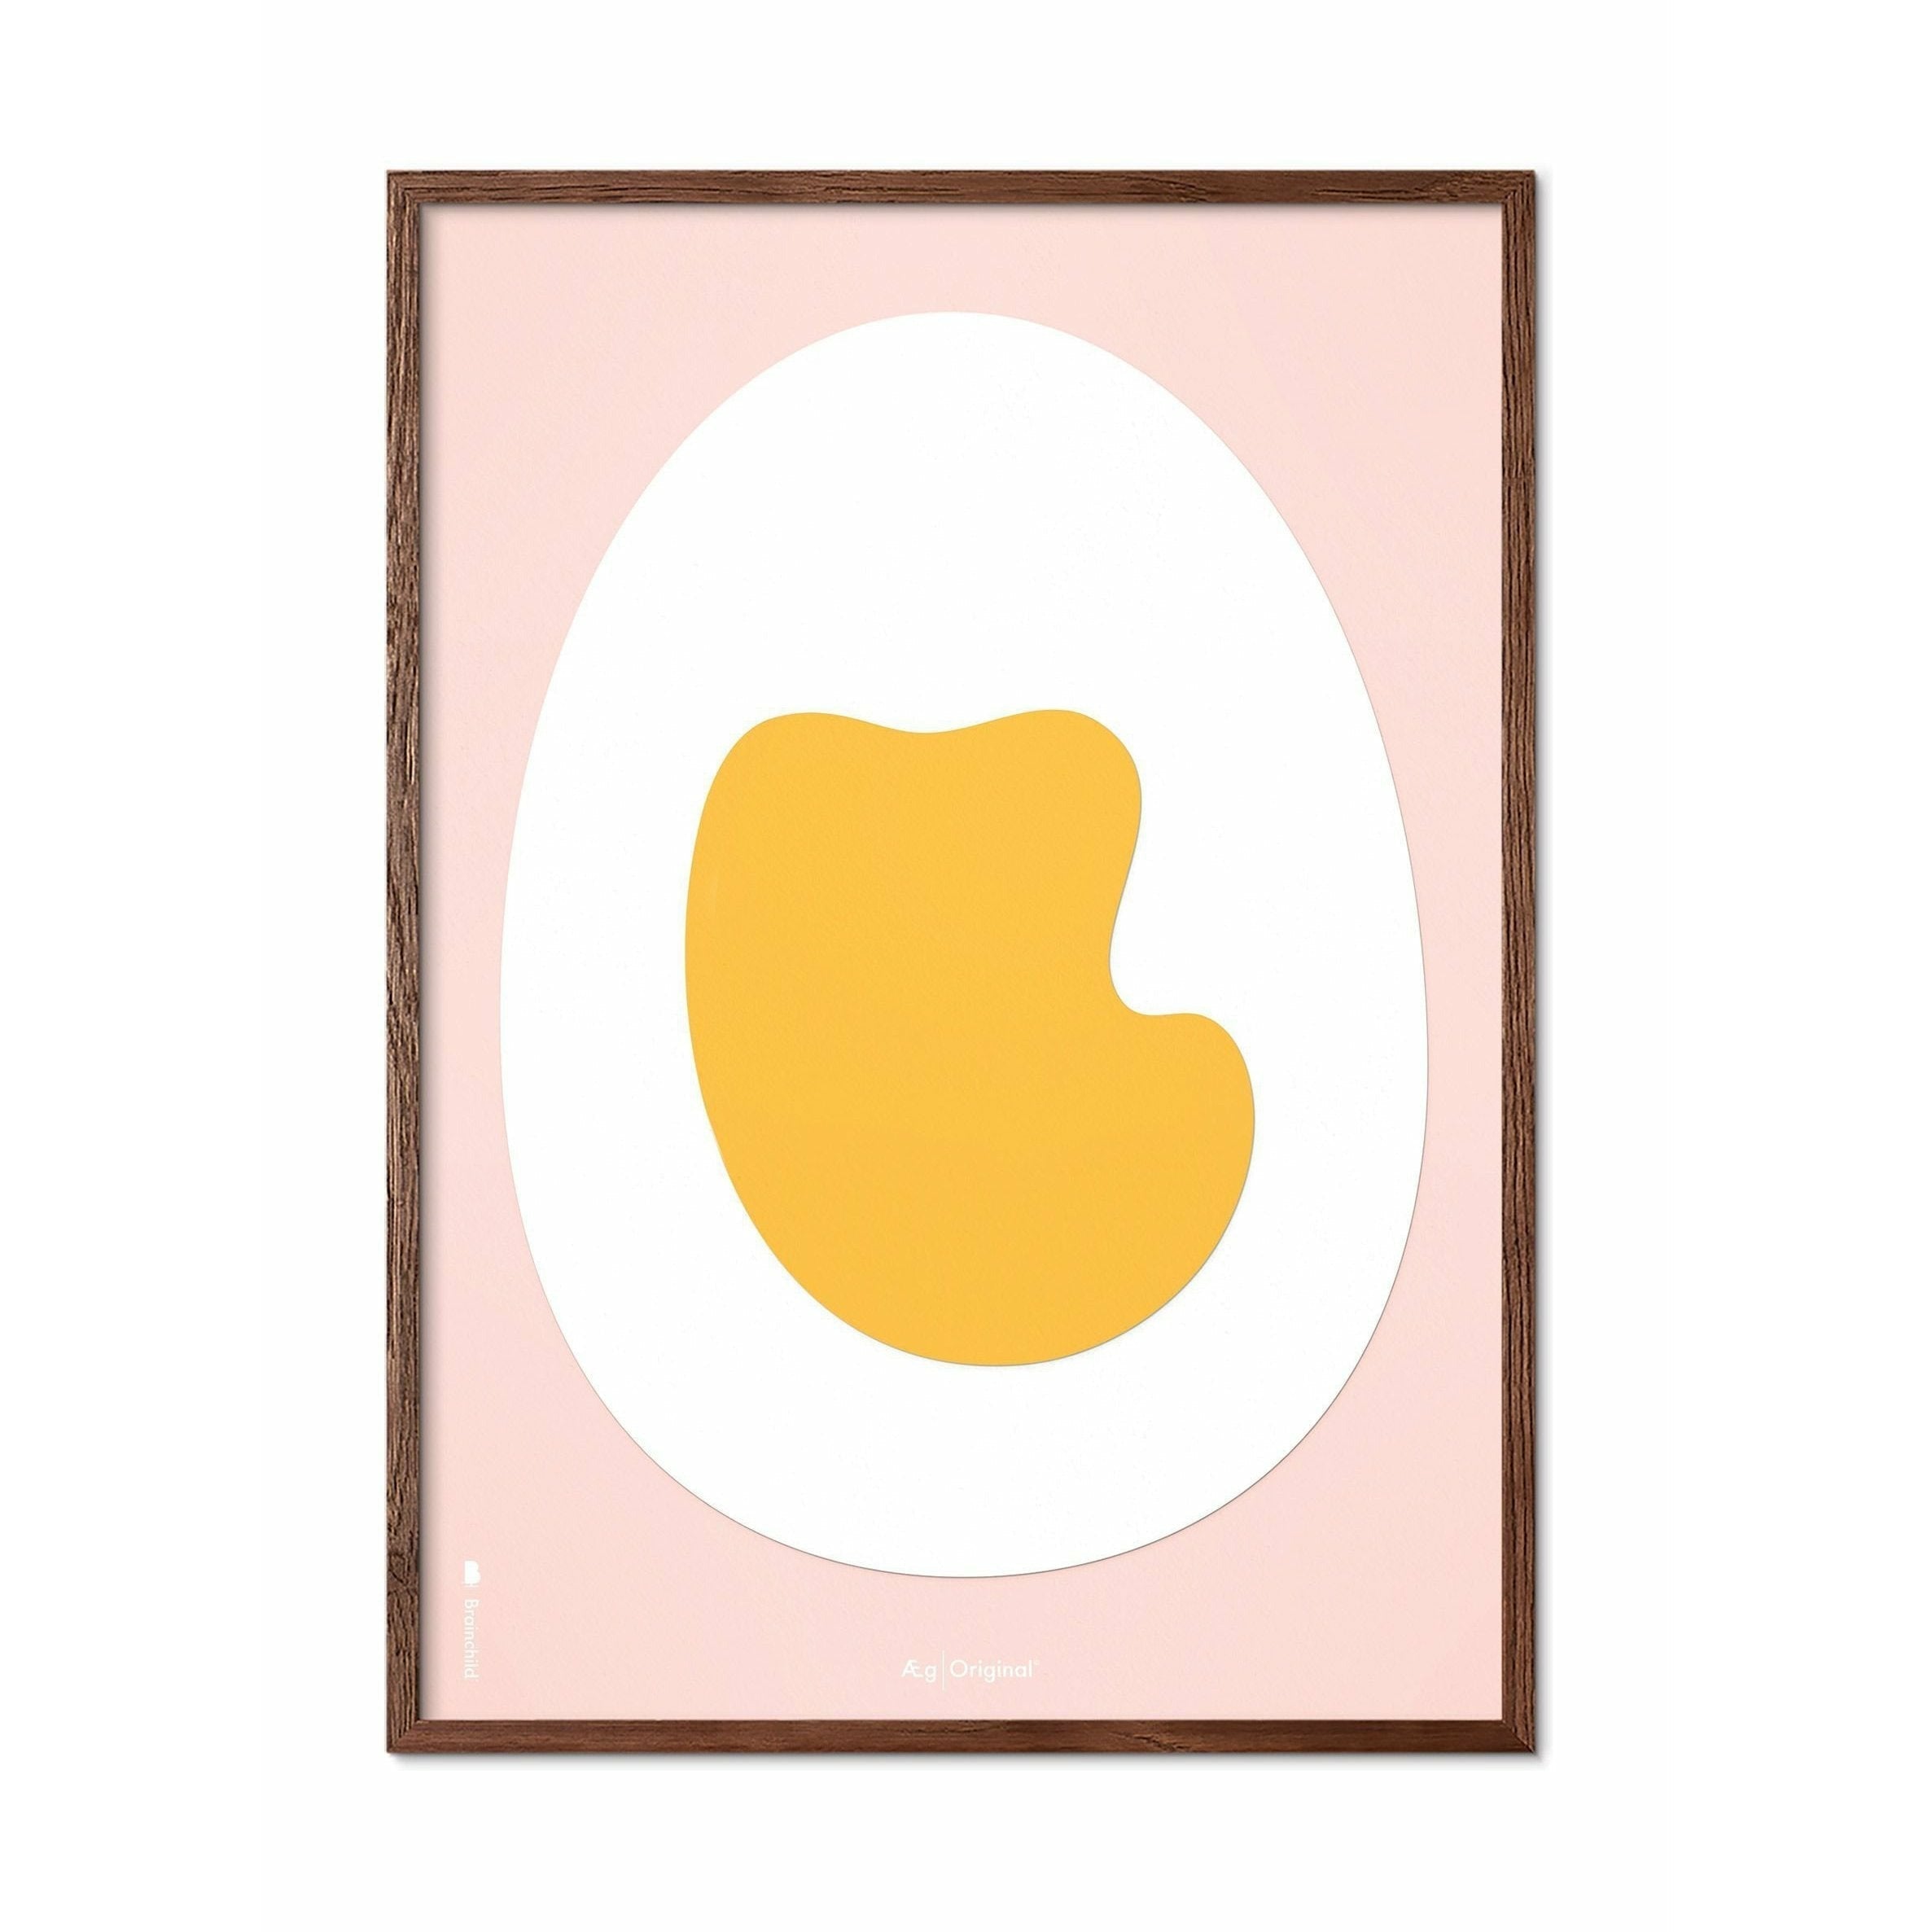 Plakat klipu z papieru do jajka, rama wykonana z ciemnego drewna 30x40 cm, różowe tło